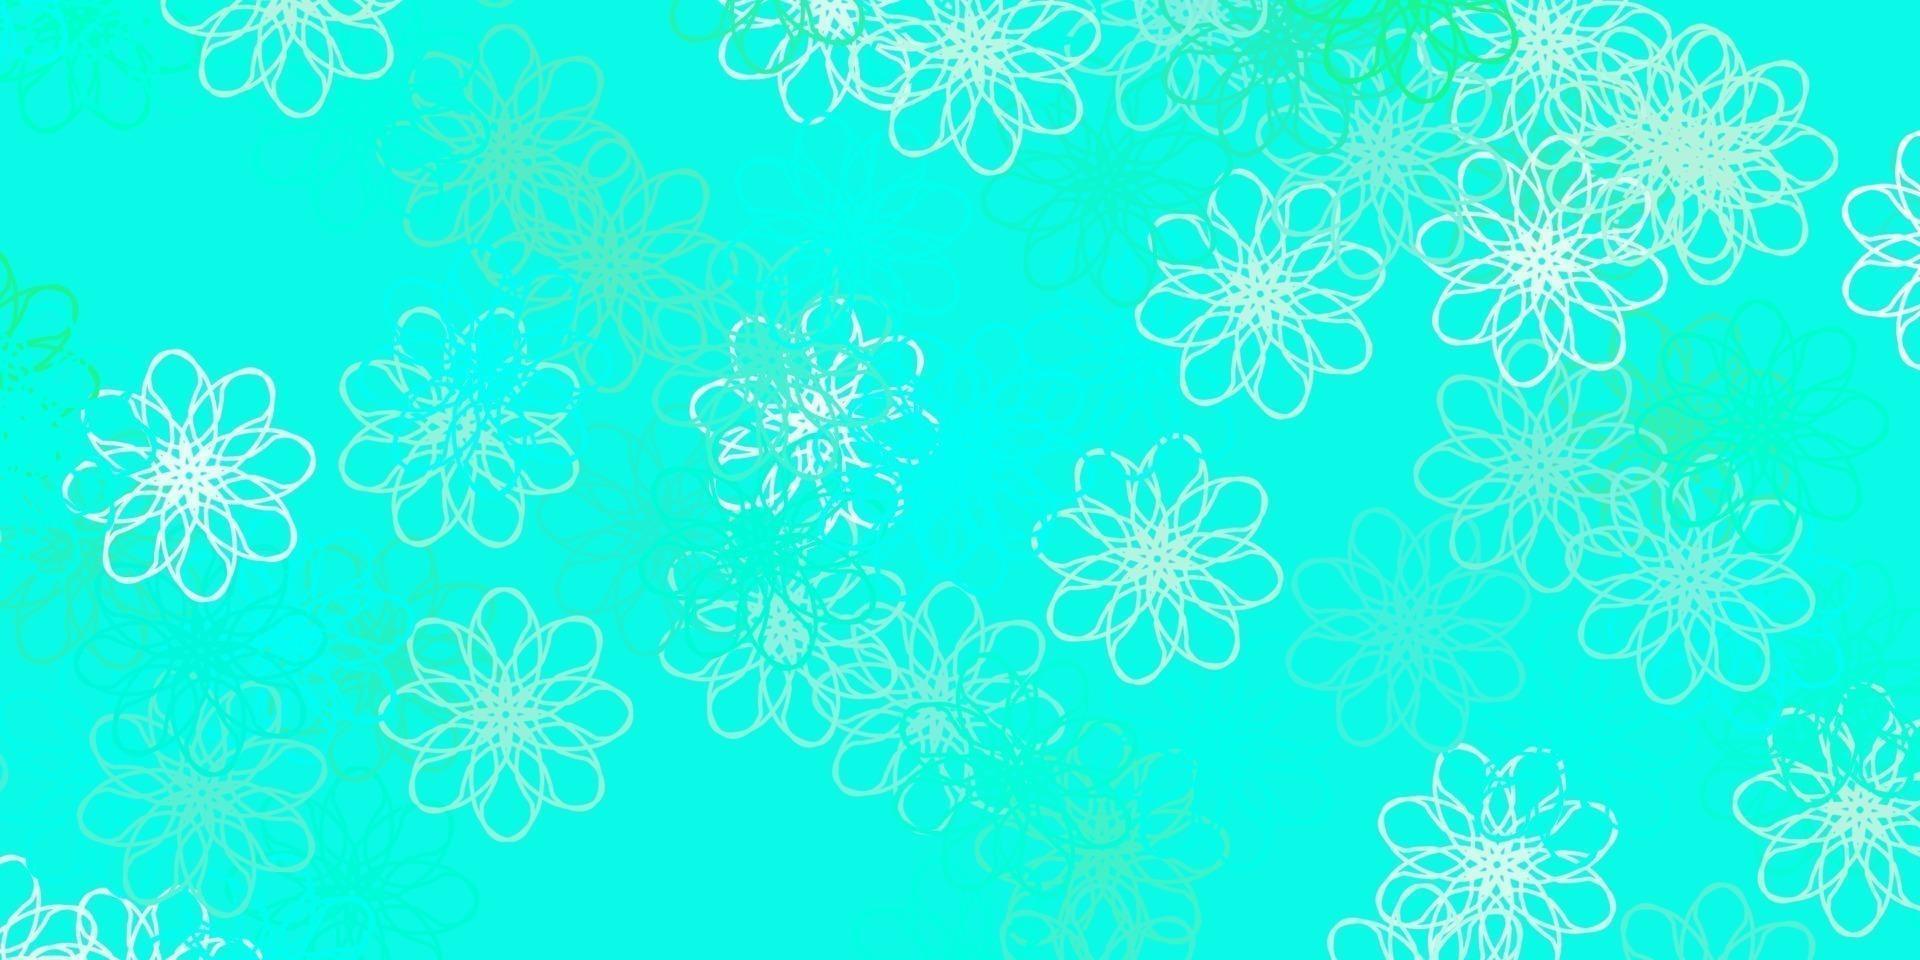 hellgrüne Vektor Gekritzelschablone mit Blumen.